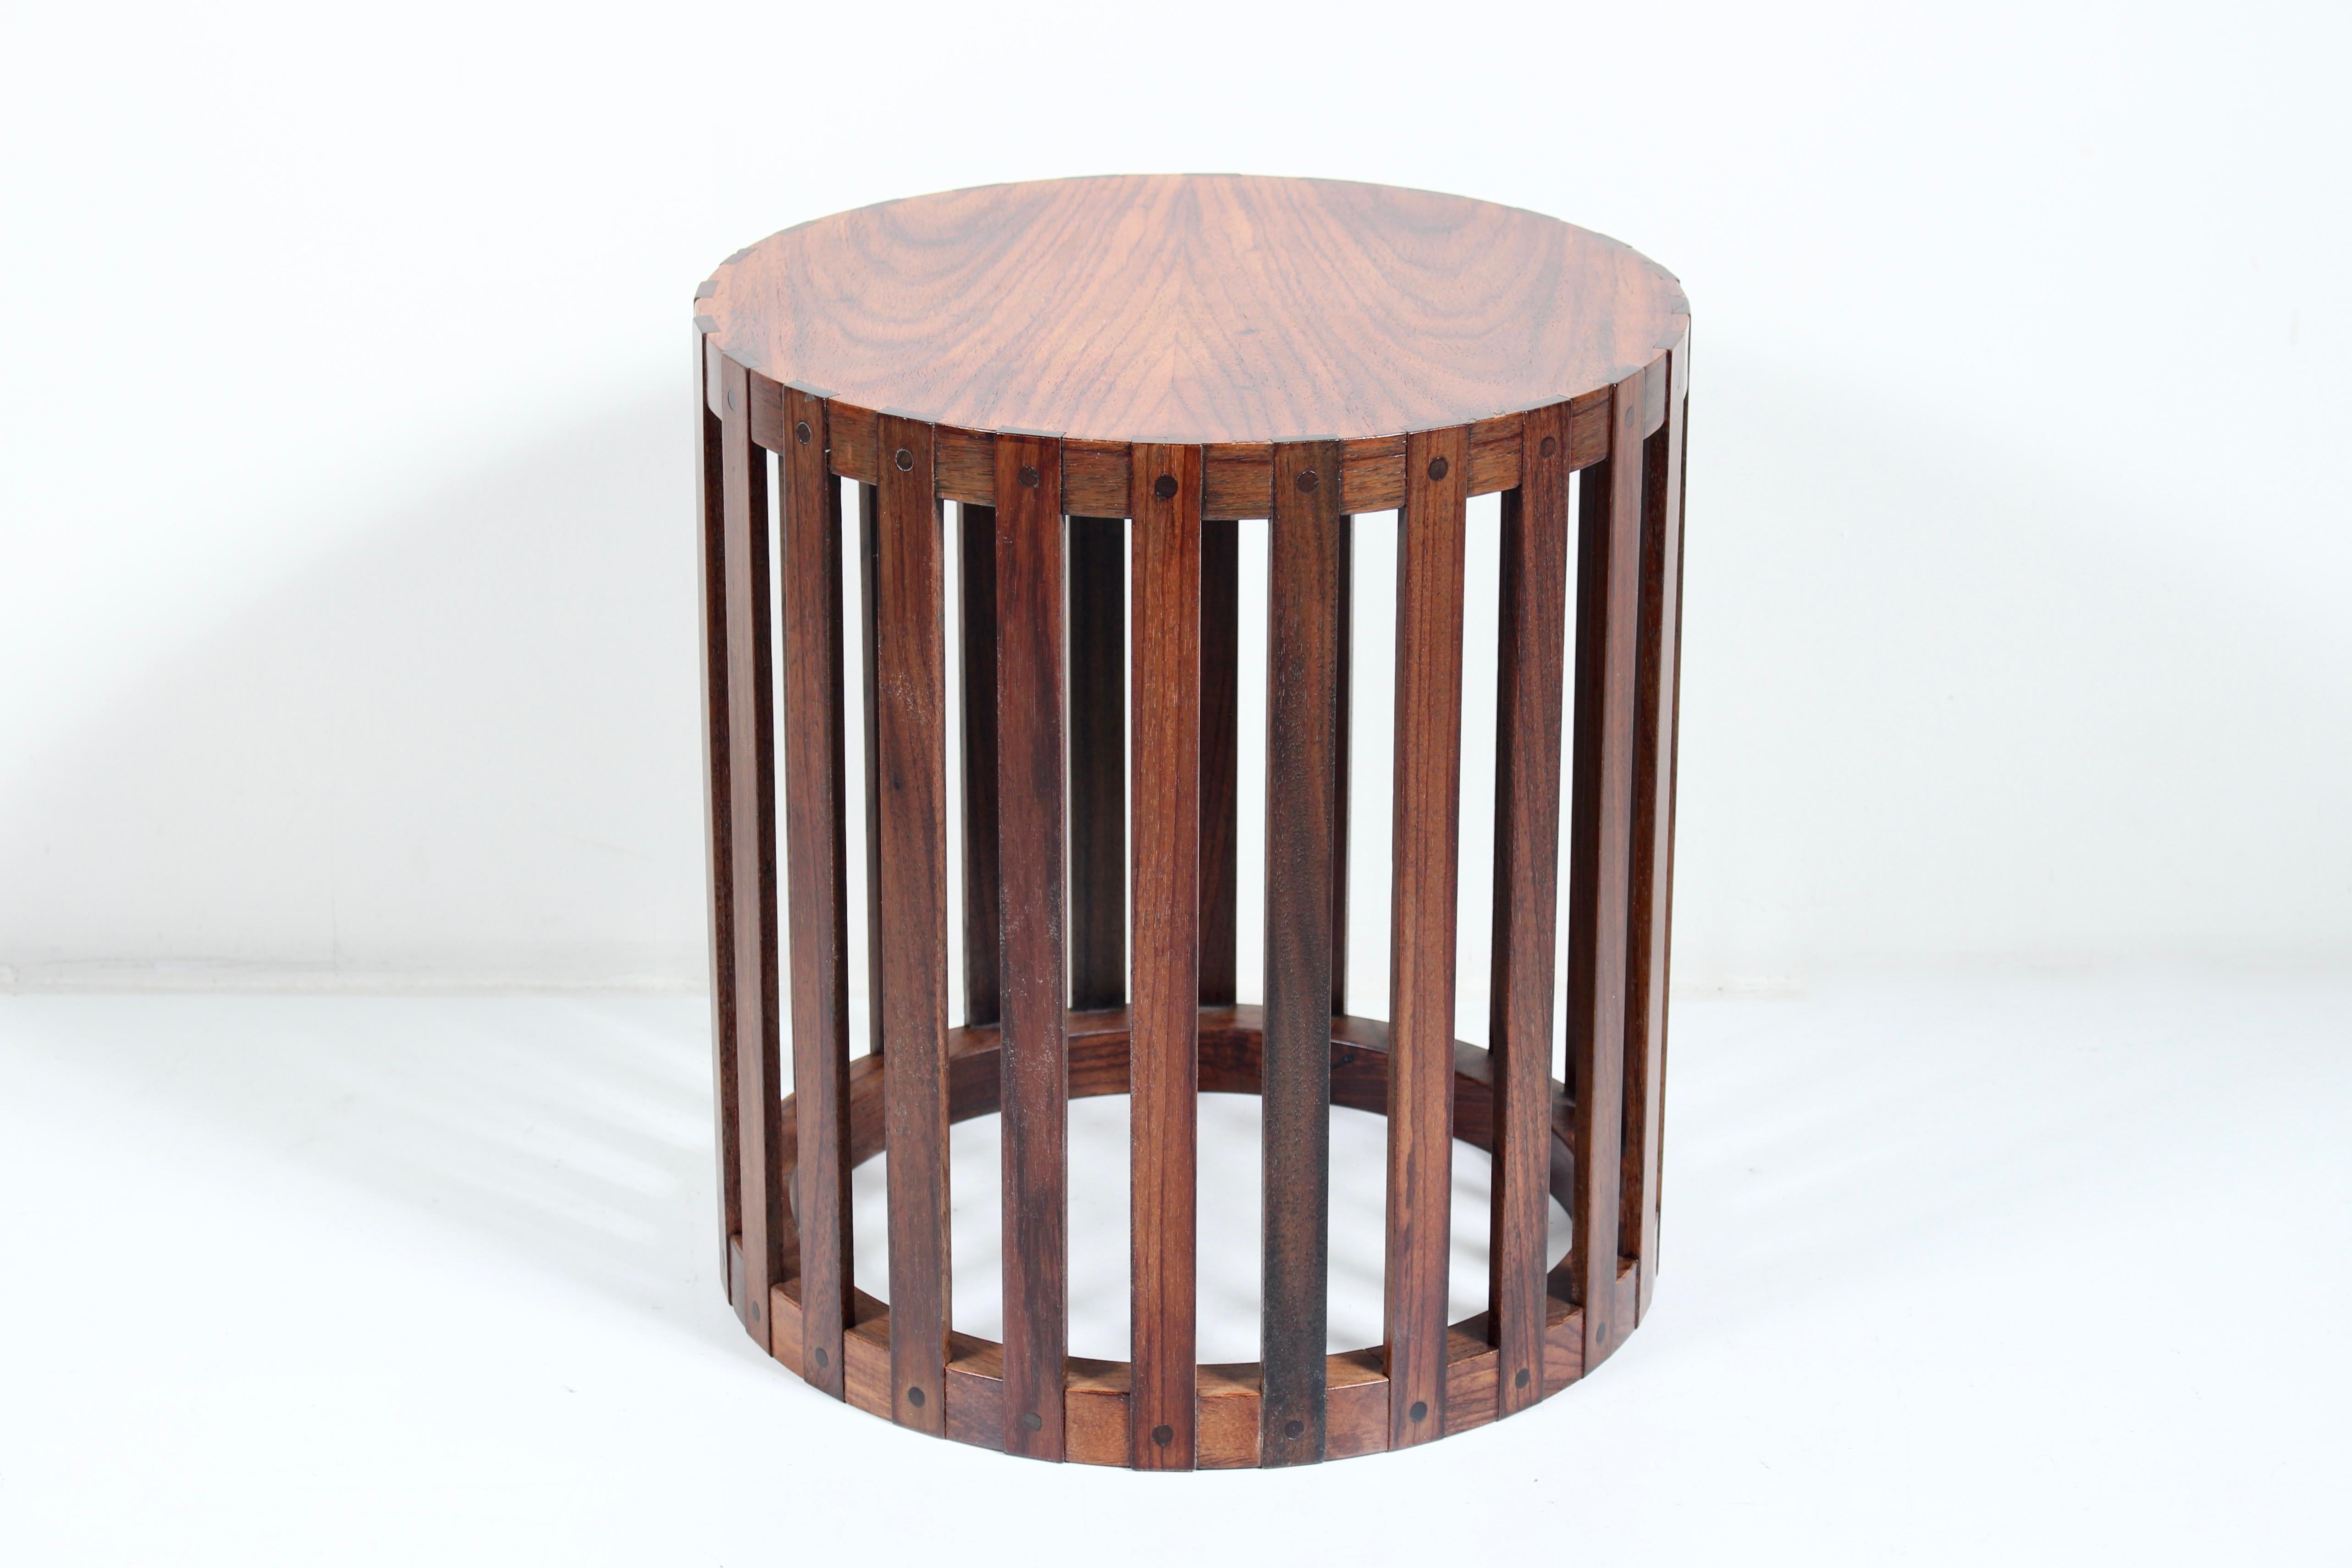 American Metropolitan Furniture Corp. Circular Slatted Solid Rosewood Occasional Table